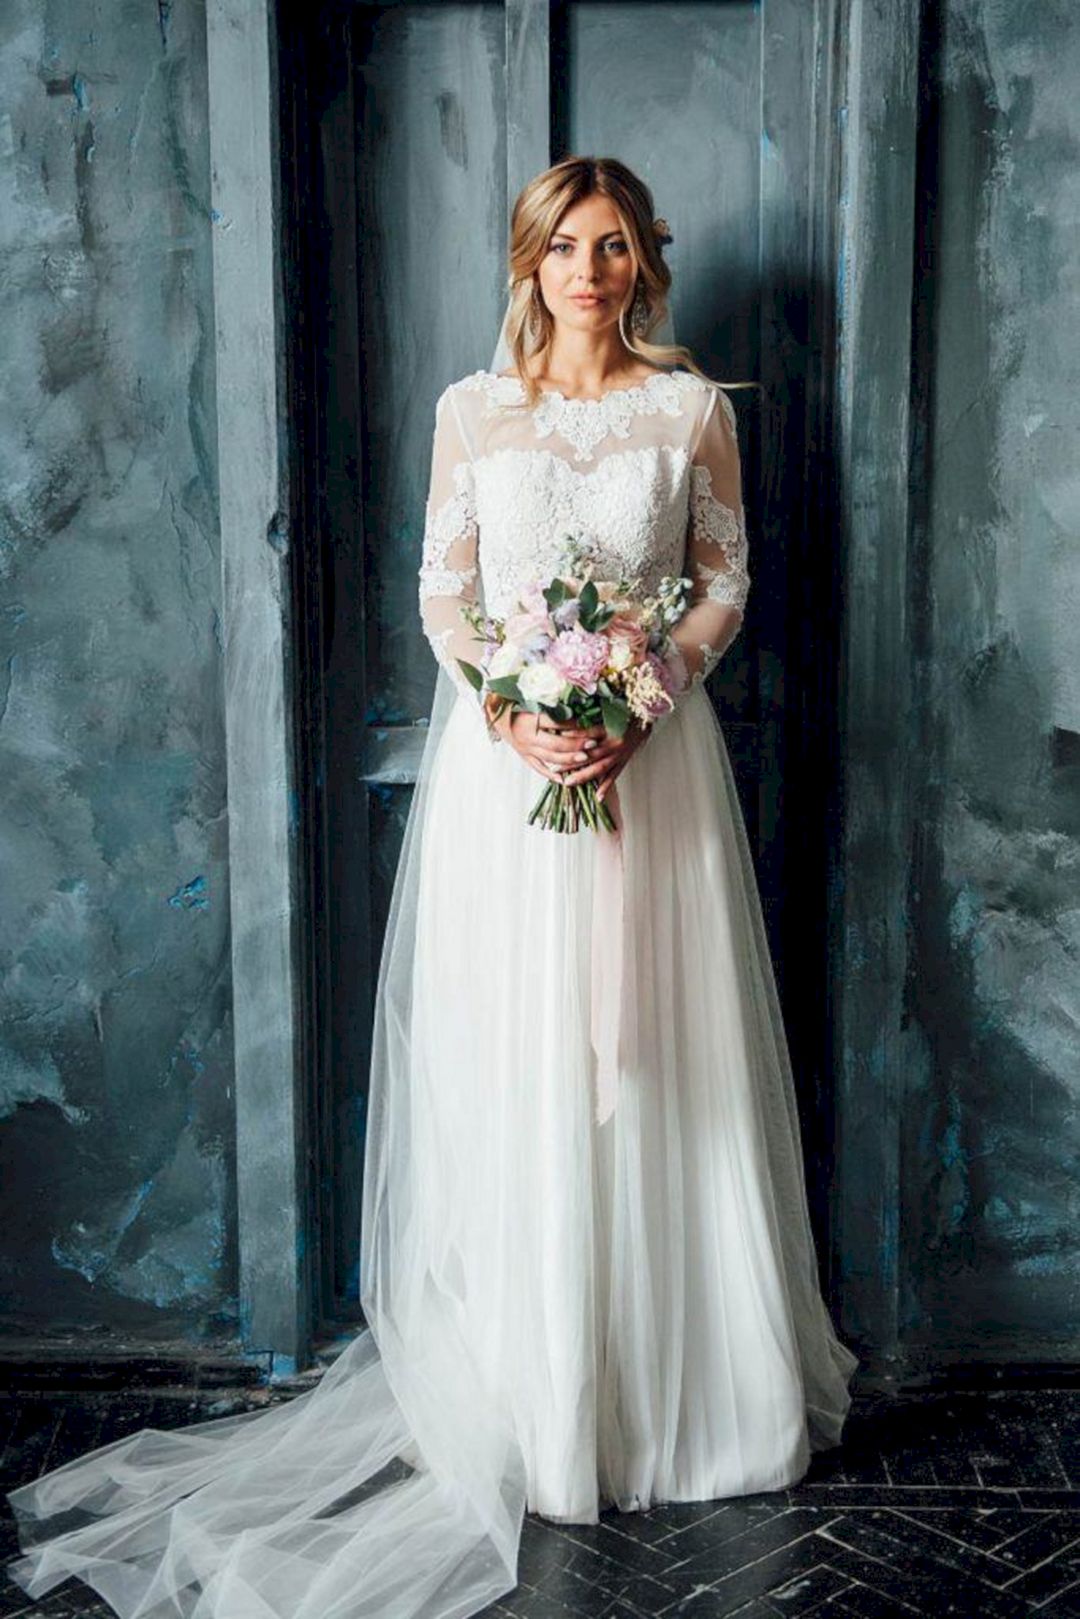 Stylish long sleeve wedding dresses from glaminati